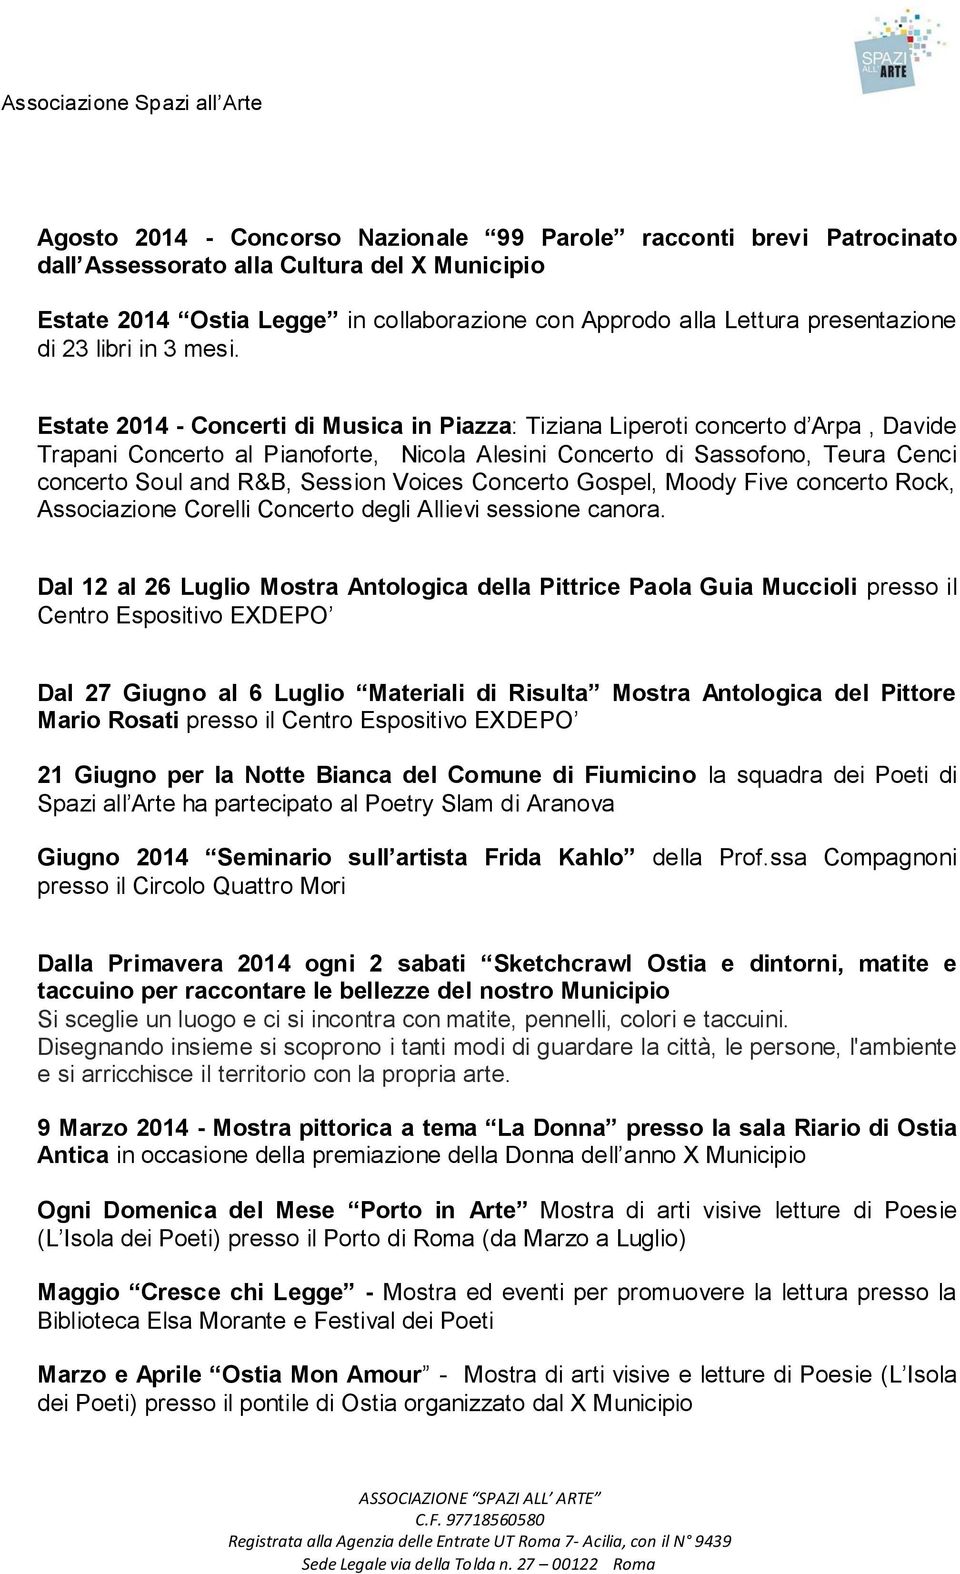 Estate 2014 - Concerti di Musica in Piazza: Tiziana Liperoti concerto d Arpa, Davide Trapani Concerto al Pianoforte, Nicola Alesini Concerto di Sassofono, Teura Cenci concerto Soul and R&B, Session